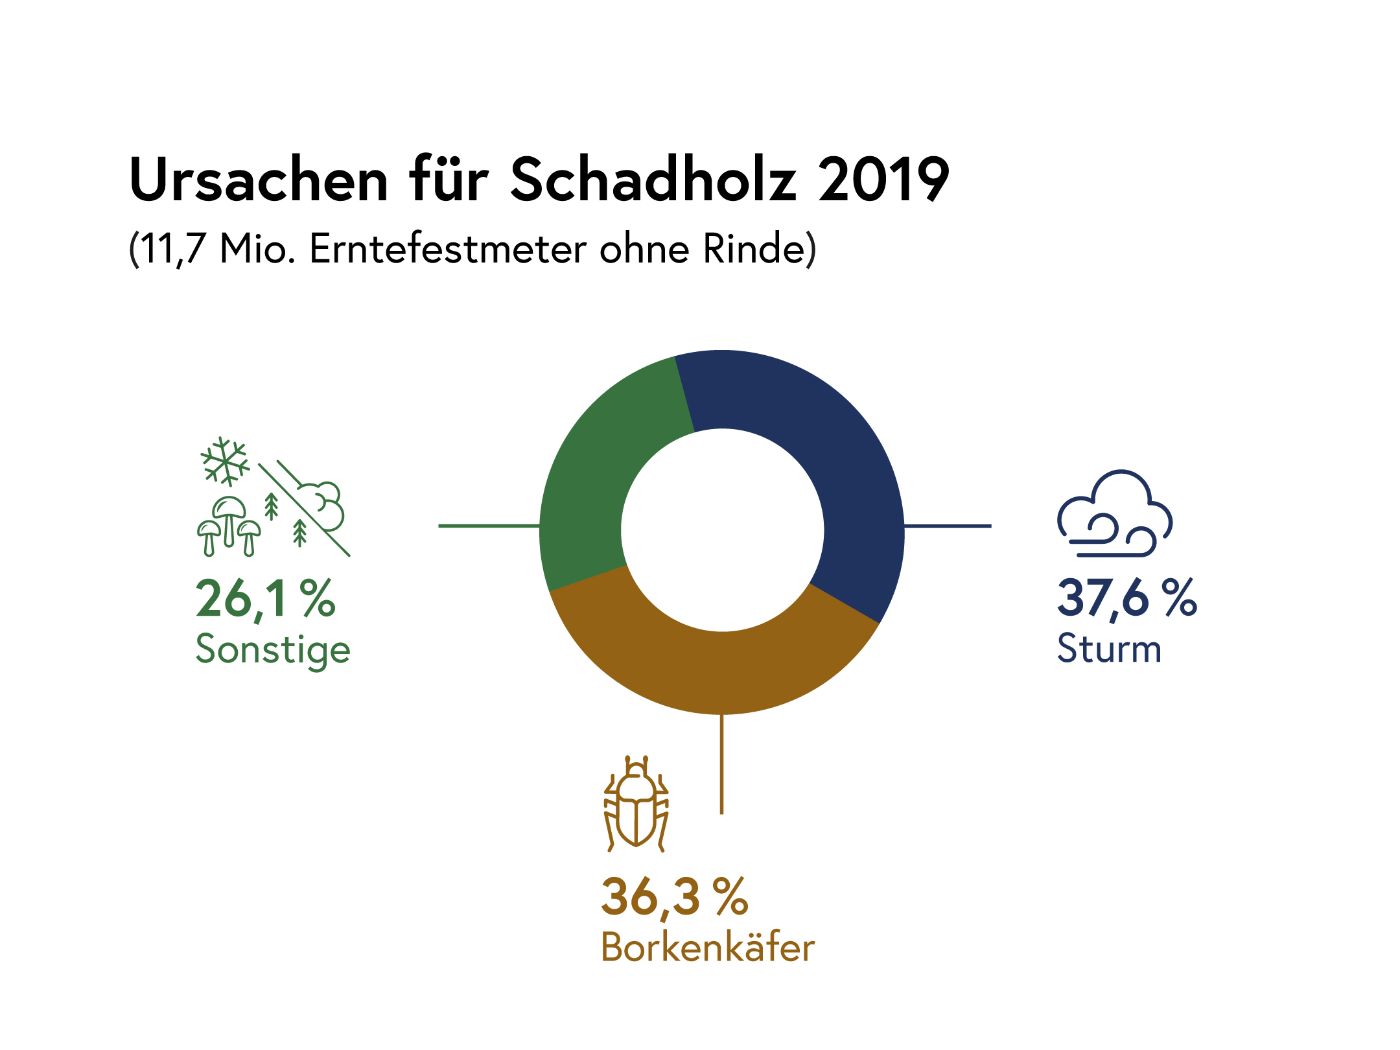 Infografik: Ursachen für Schadholz 2019: 11,7 Millionen Erntefestmeter ohne Rinde: 37,6 Prozent Sturm, 36,3 Prozent Borkenkäfer, 26,1 Prozent Sonstige